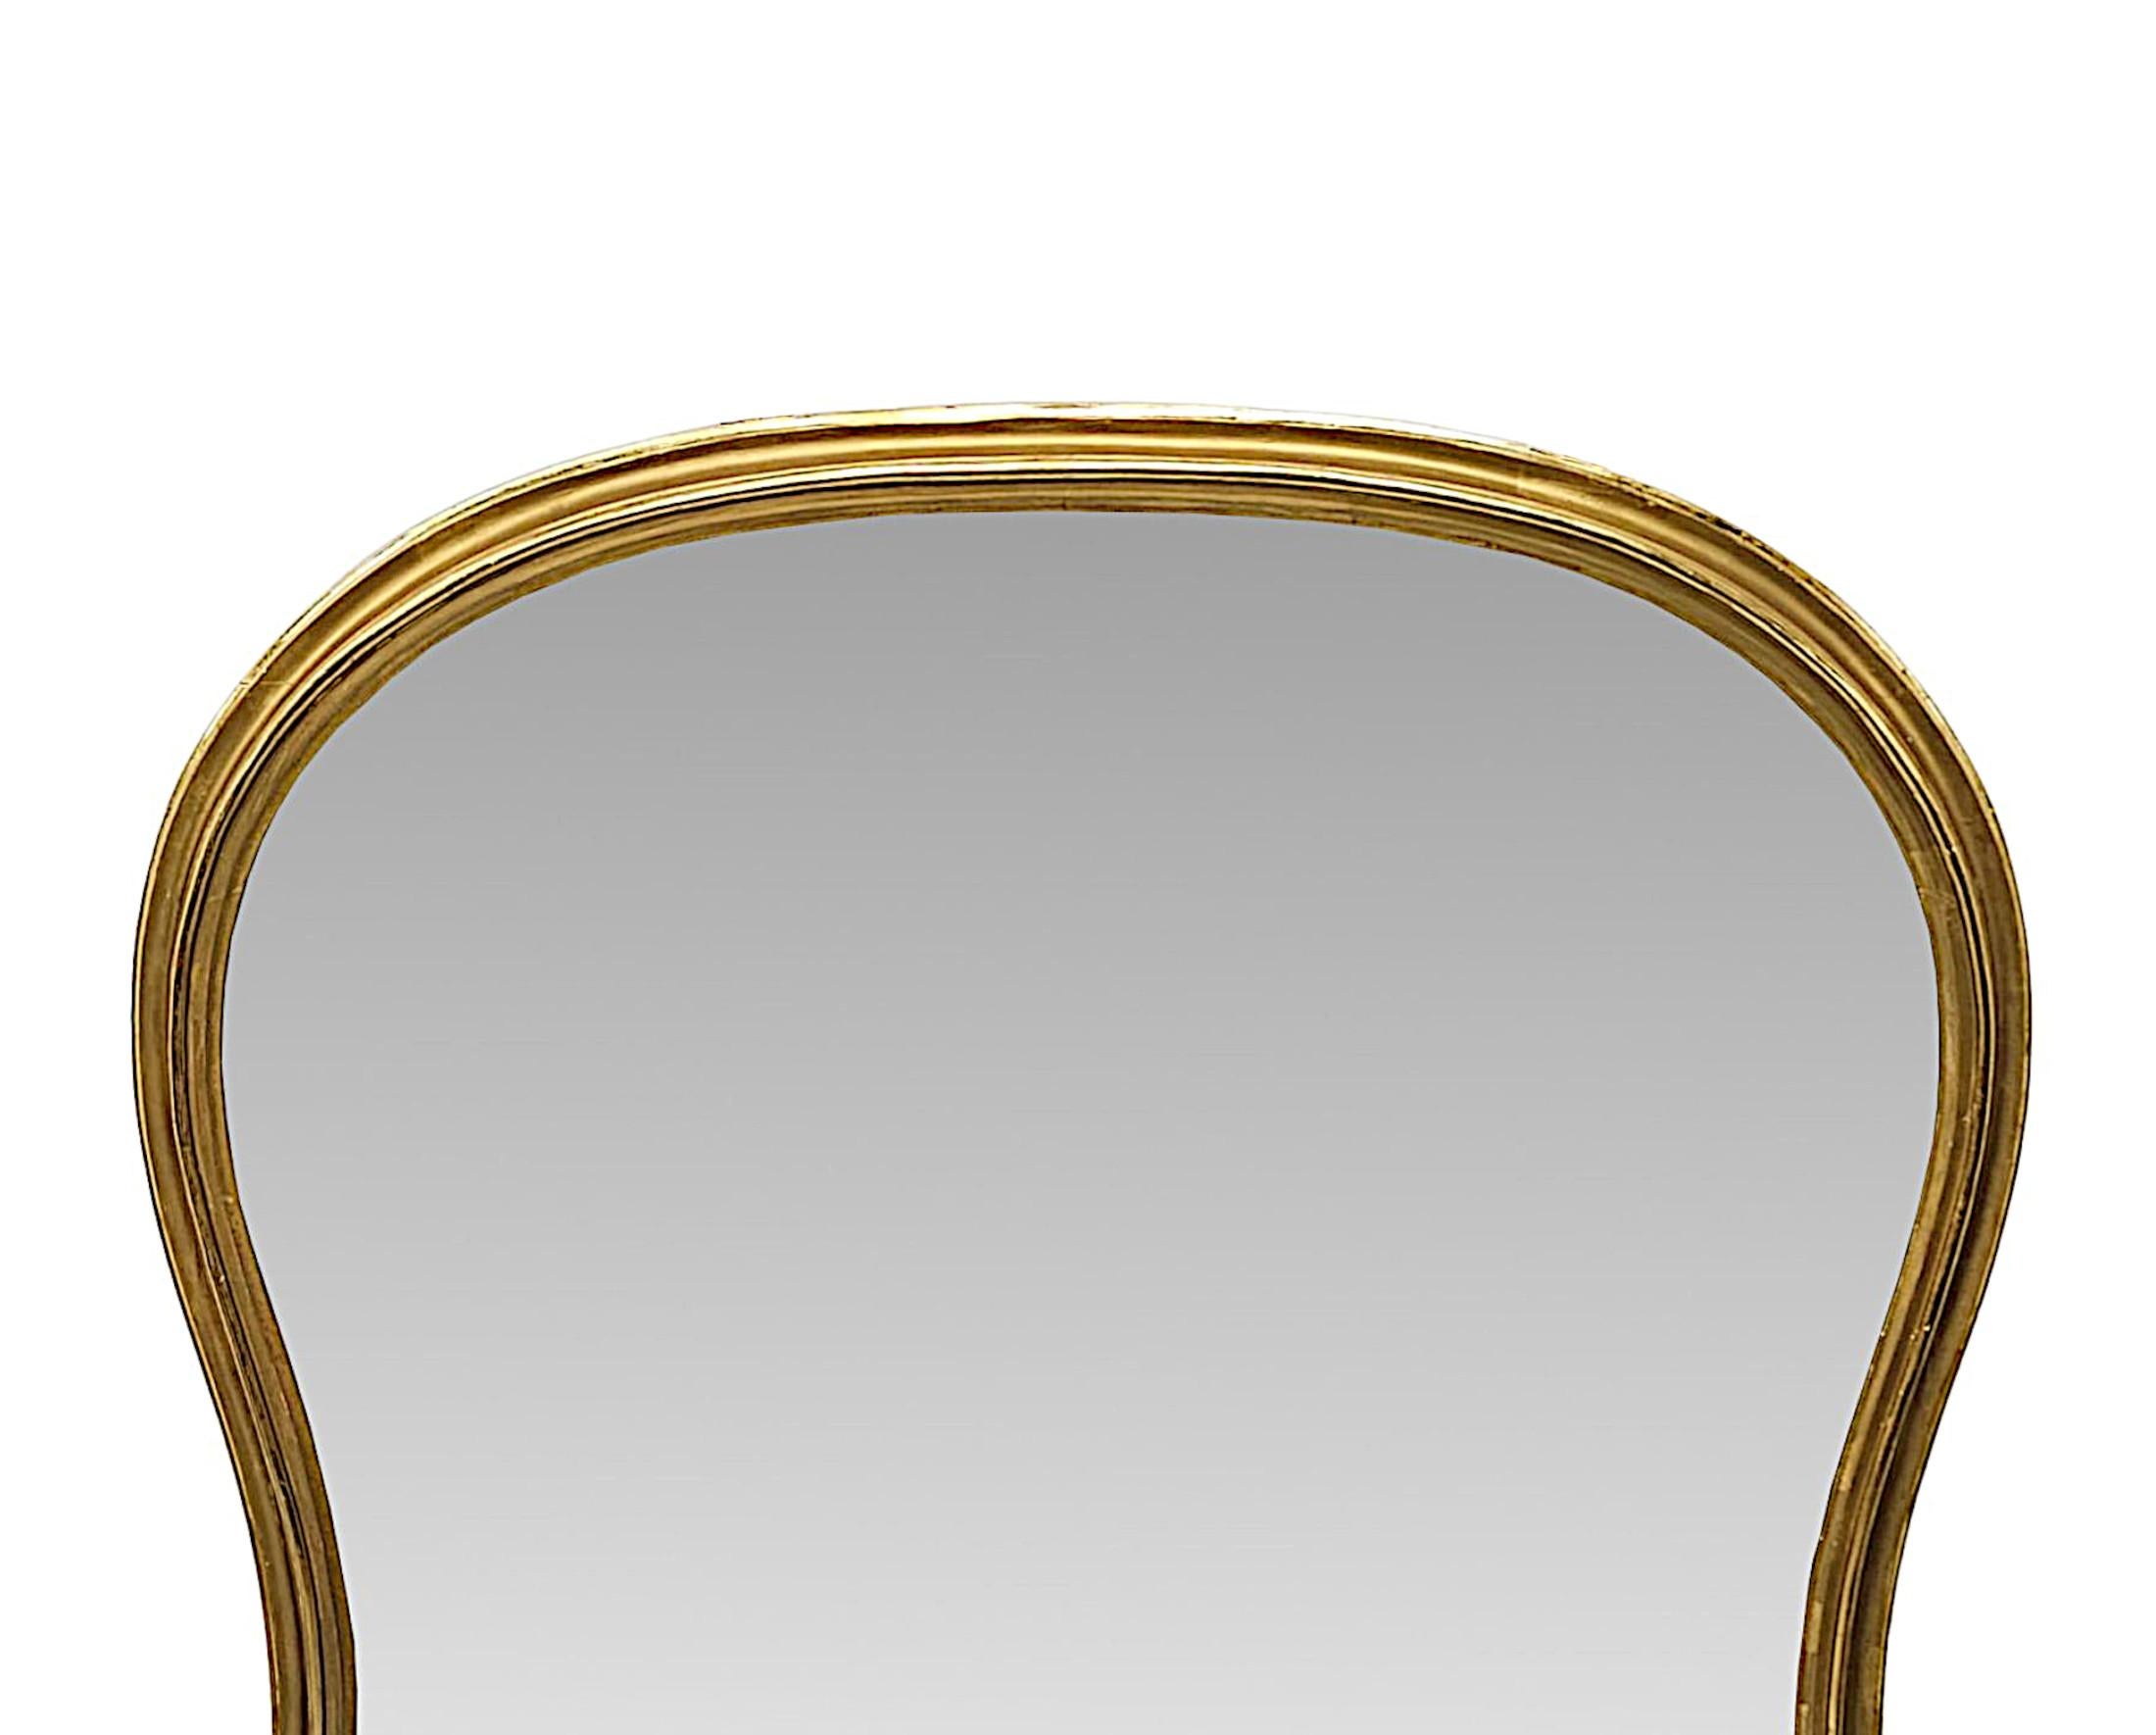 Très beau miroir à trumeau en bois doré du XIXe siècle, de grandes proportions et d'une qualité exceptionnelle.  La plaque de verre en forme de miroir est enchâssée dans un cadre en bois doré élégamment simple et étonnamment sculpté à la main,